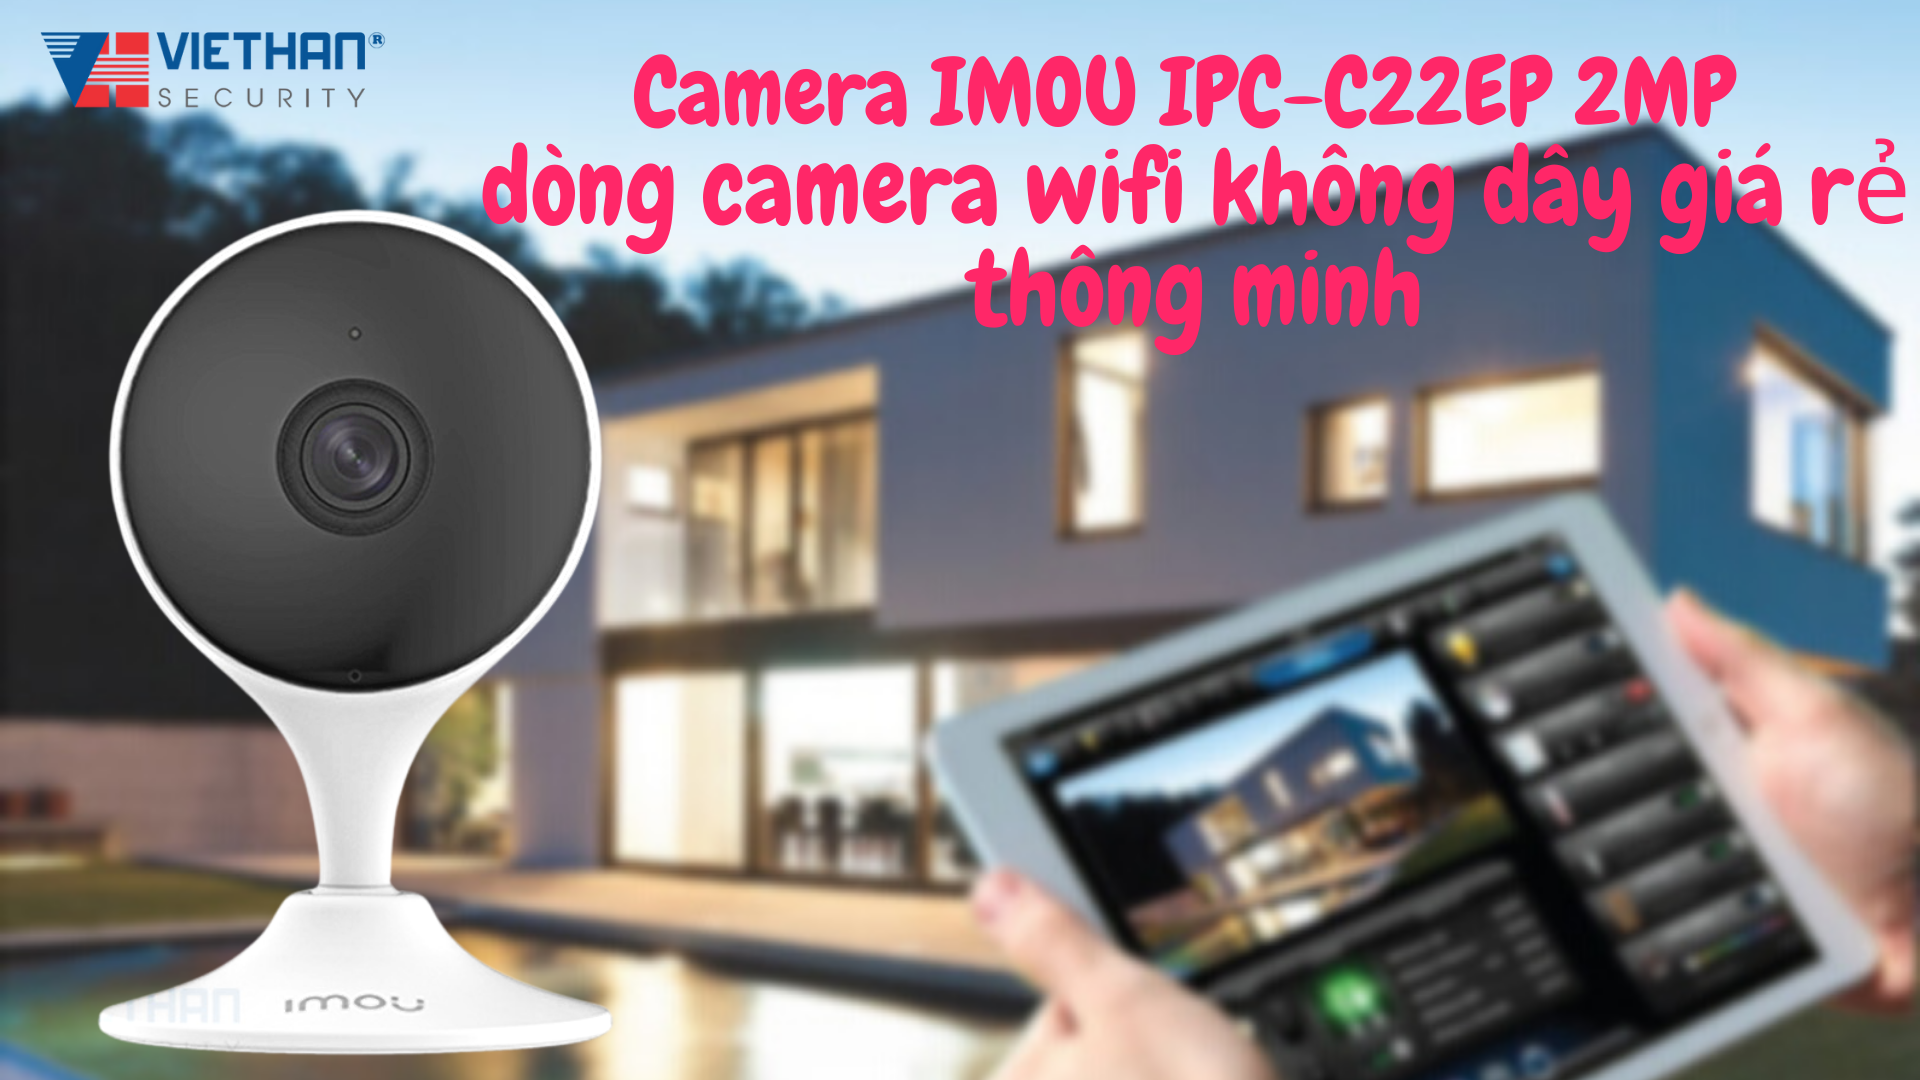 Camera IMOU IPC-C22EP 2MP dòng camera wifi không dây giá rẻ thông minh